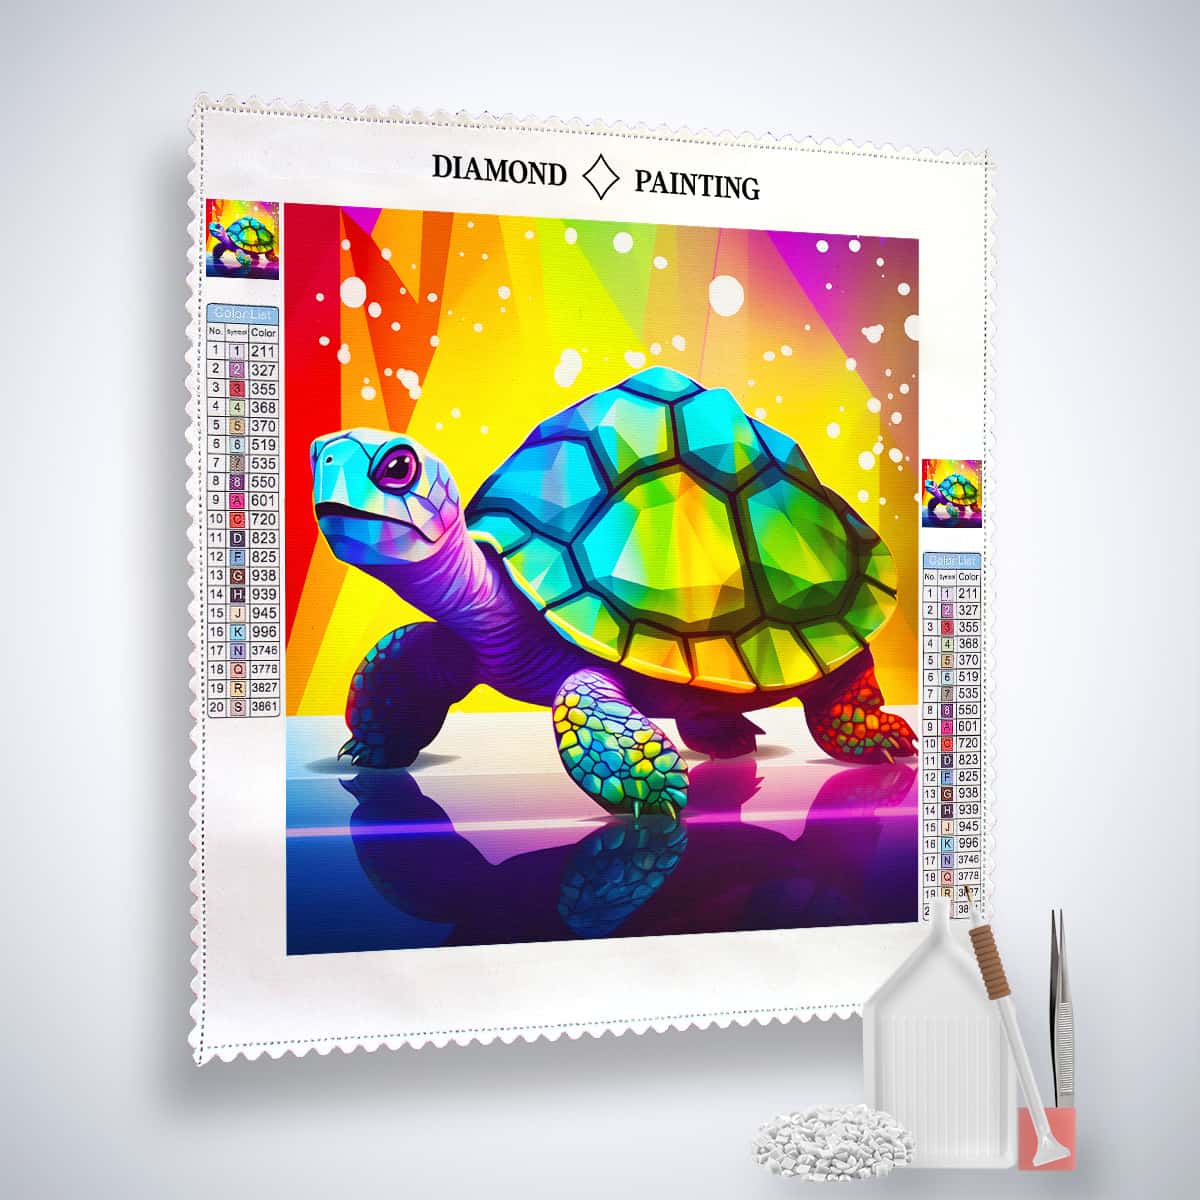 AB Diamond Painting - Diamant Schildkröte - gedruckt in Ultra-HD - AB Diamond, Neu eingetroffen, Quadratisch, Schildkröte, Tiere